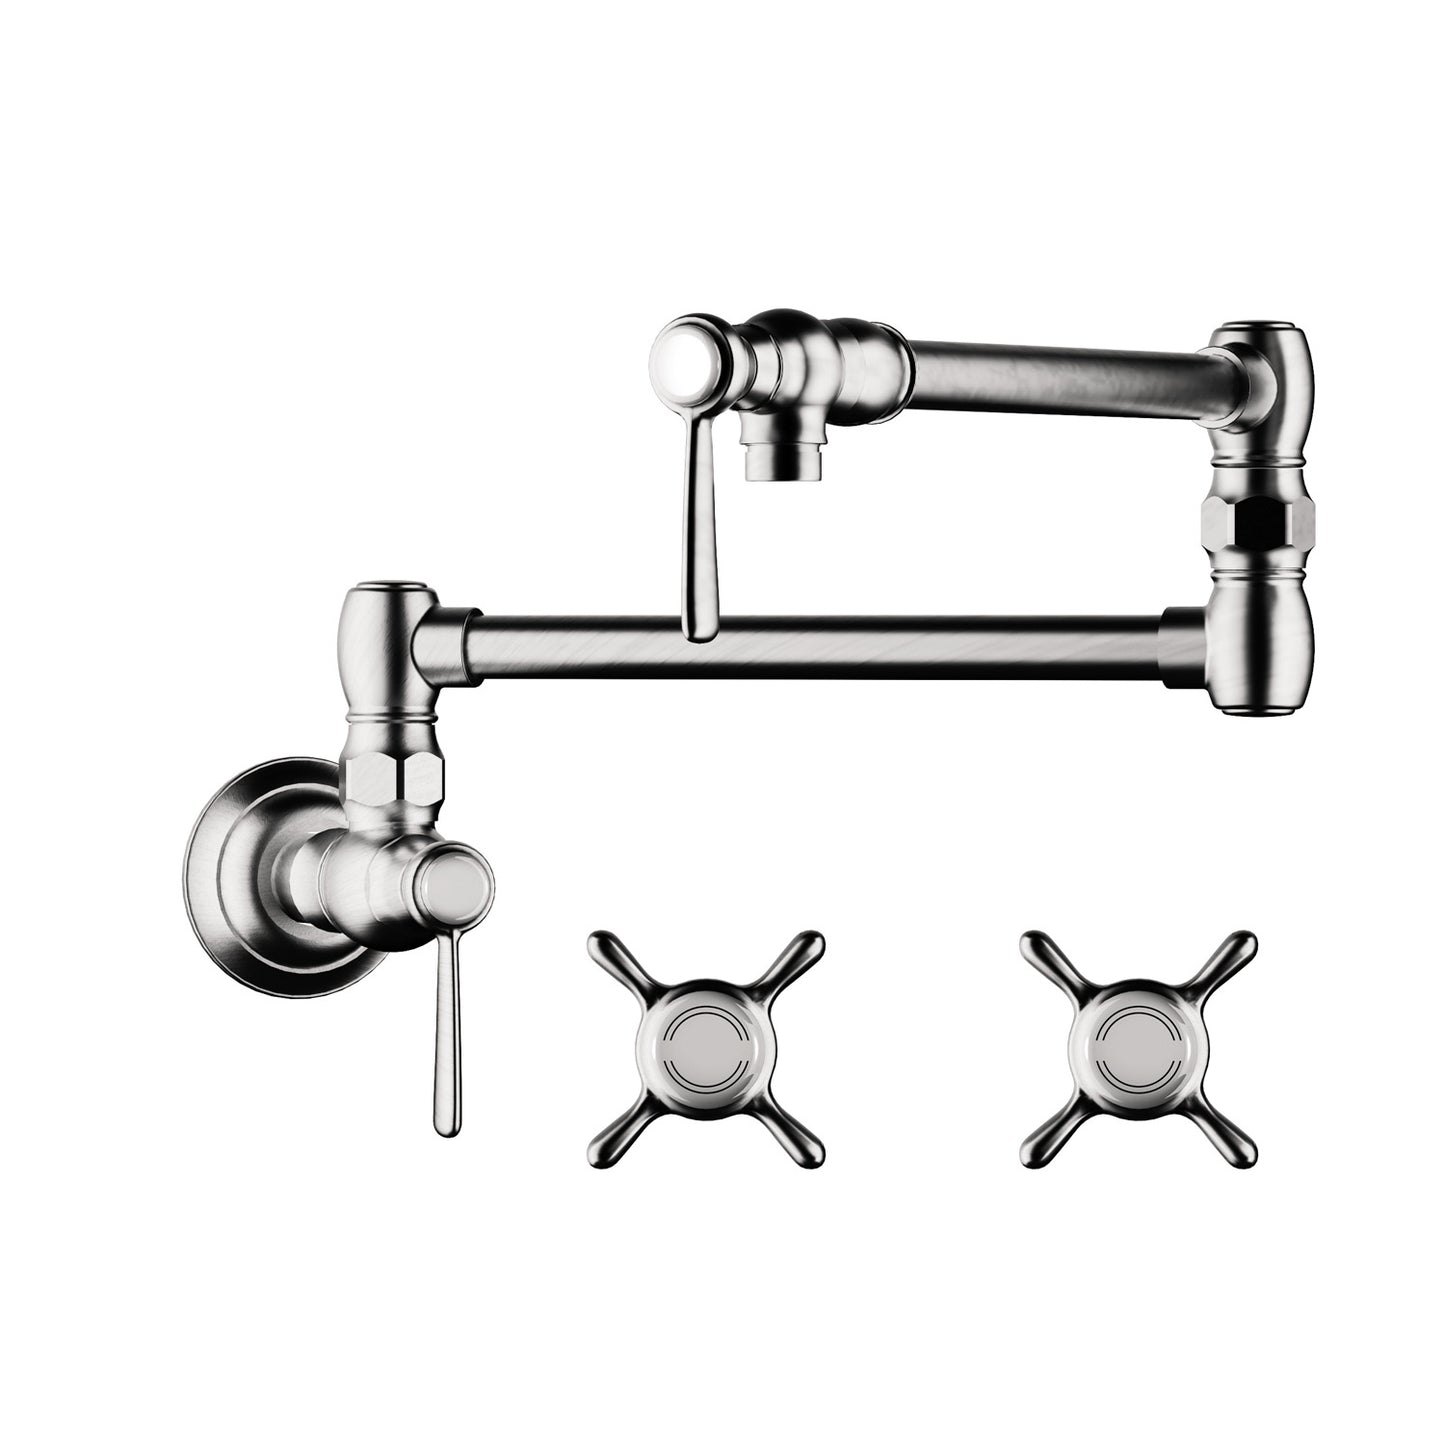 AXOR 16859001 Chrome Montreux Classic Kitchen Faucet 2.5 GPM